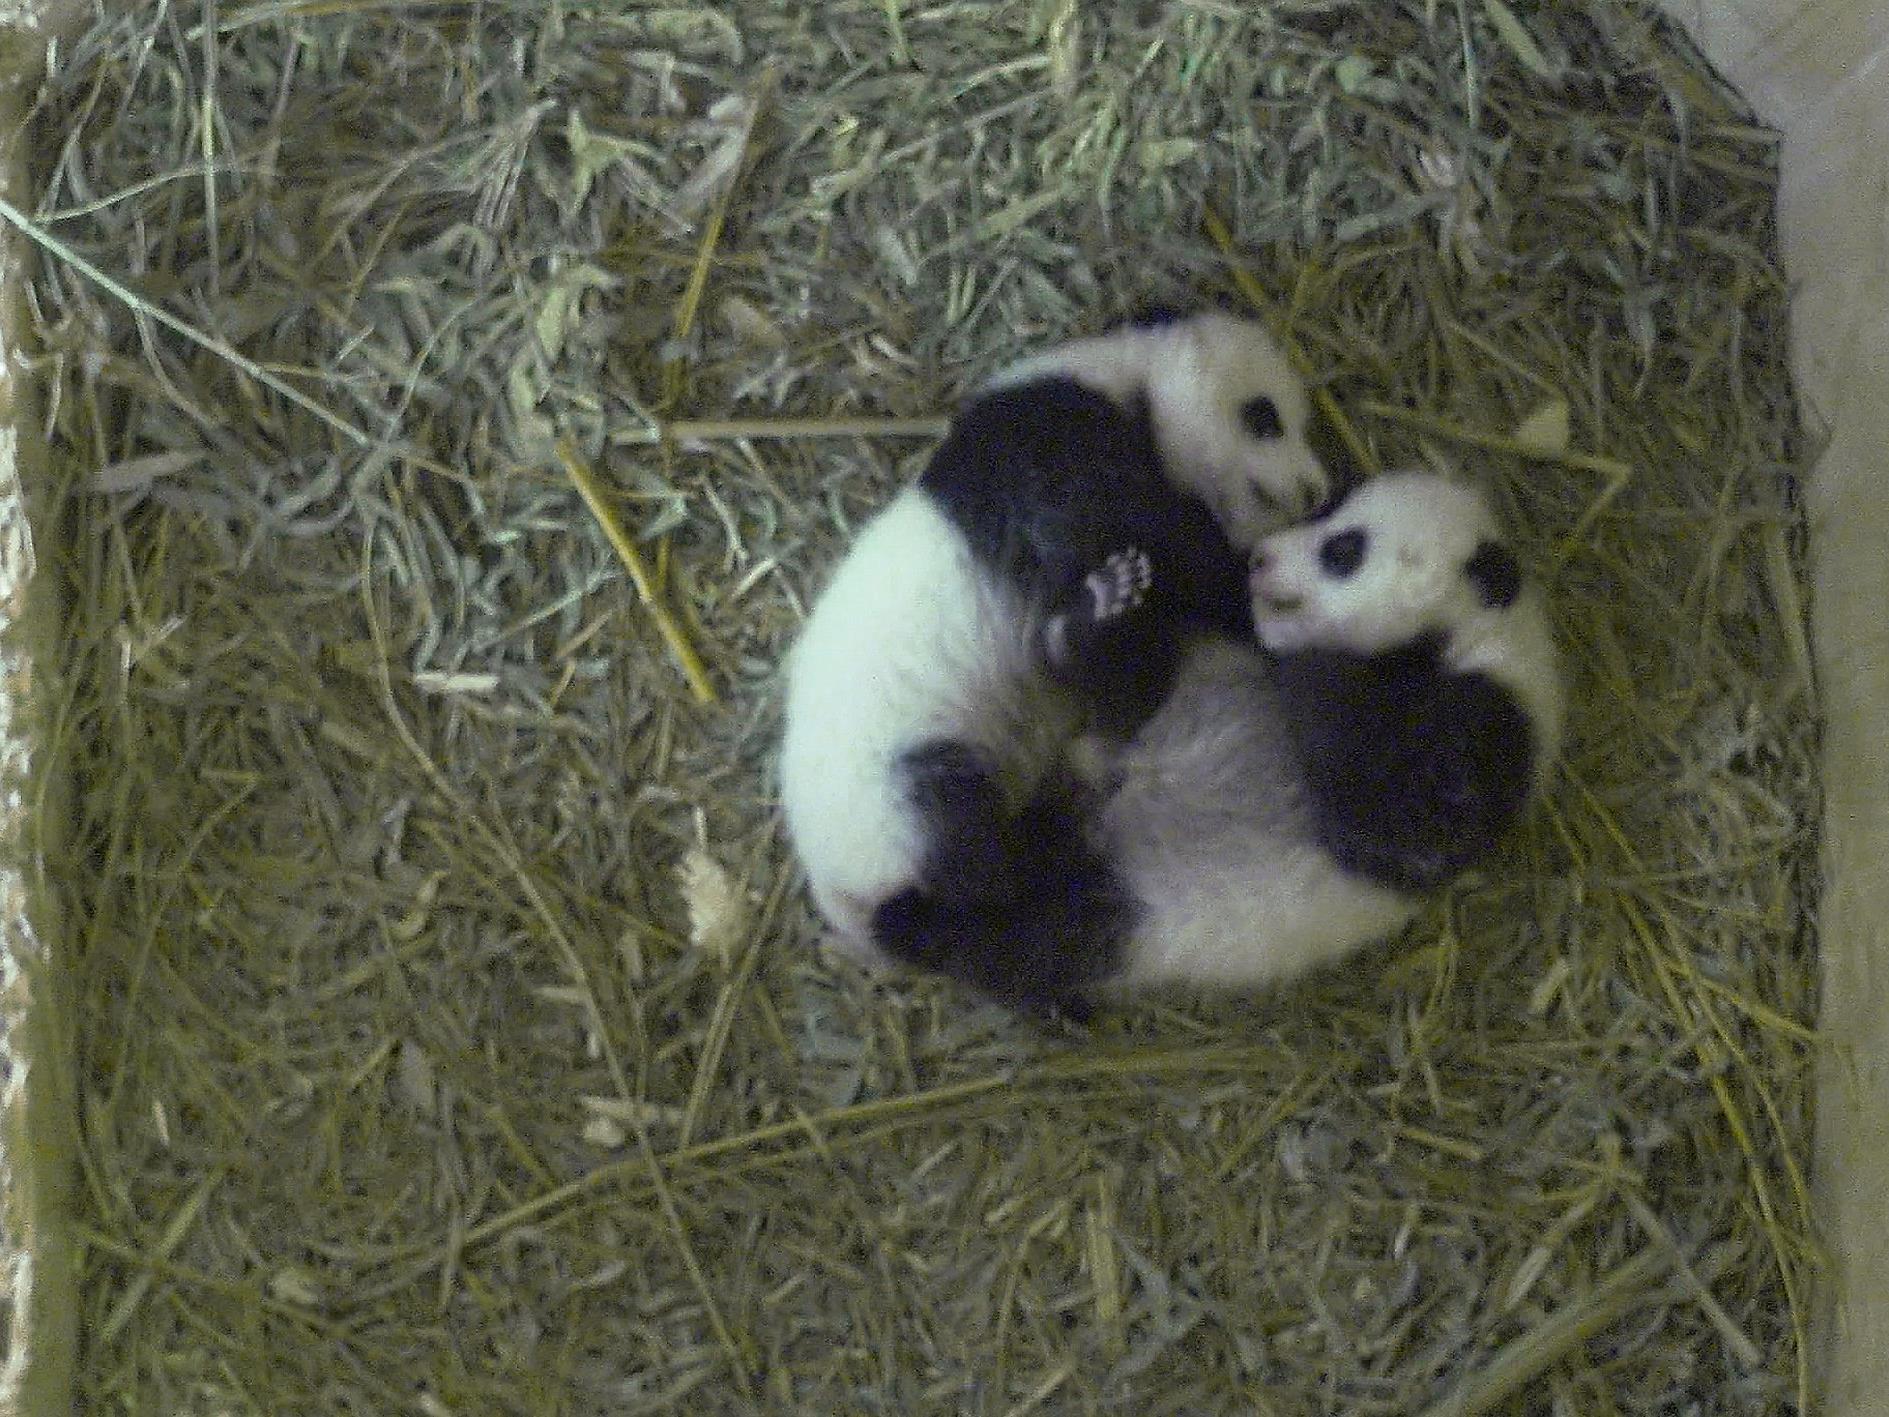 In Kürze werden die Panda-Babys ihren Namen erhalten